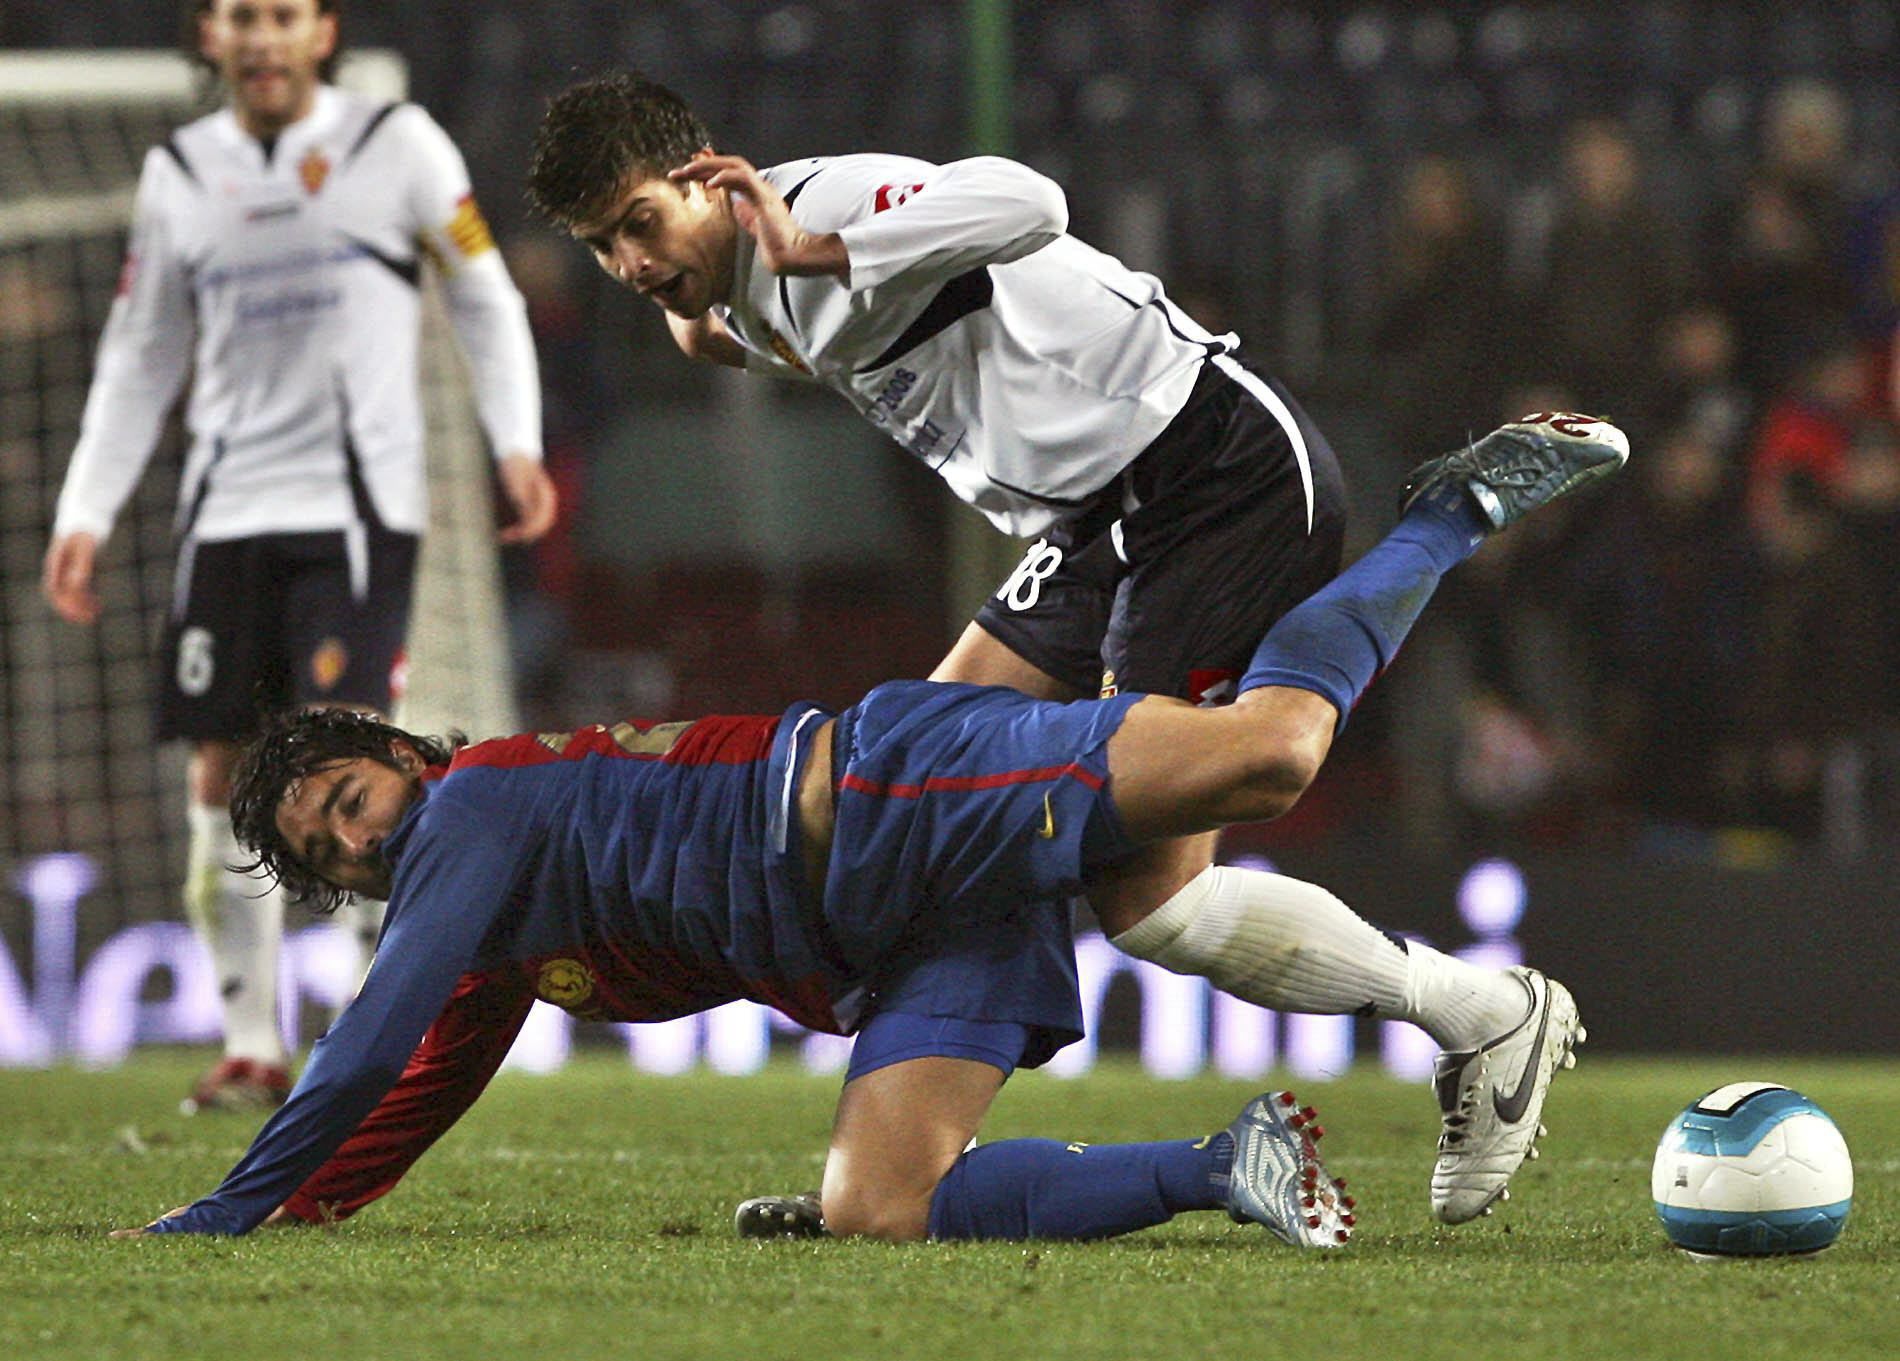 FOTOGALERÍA | Los mejores momentos de Gerard Piqué con la camiseta del Real Zaragoza